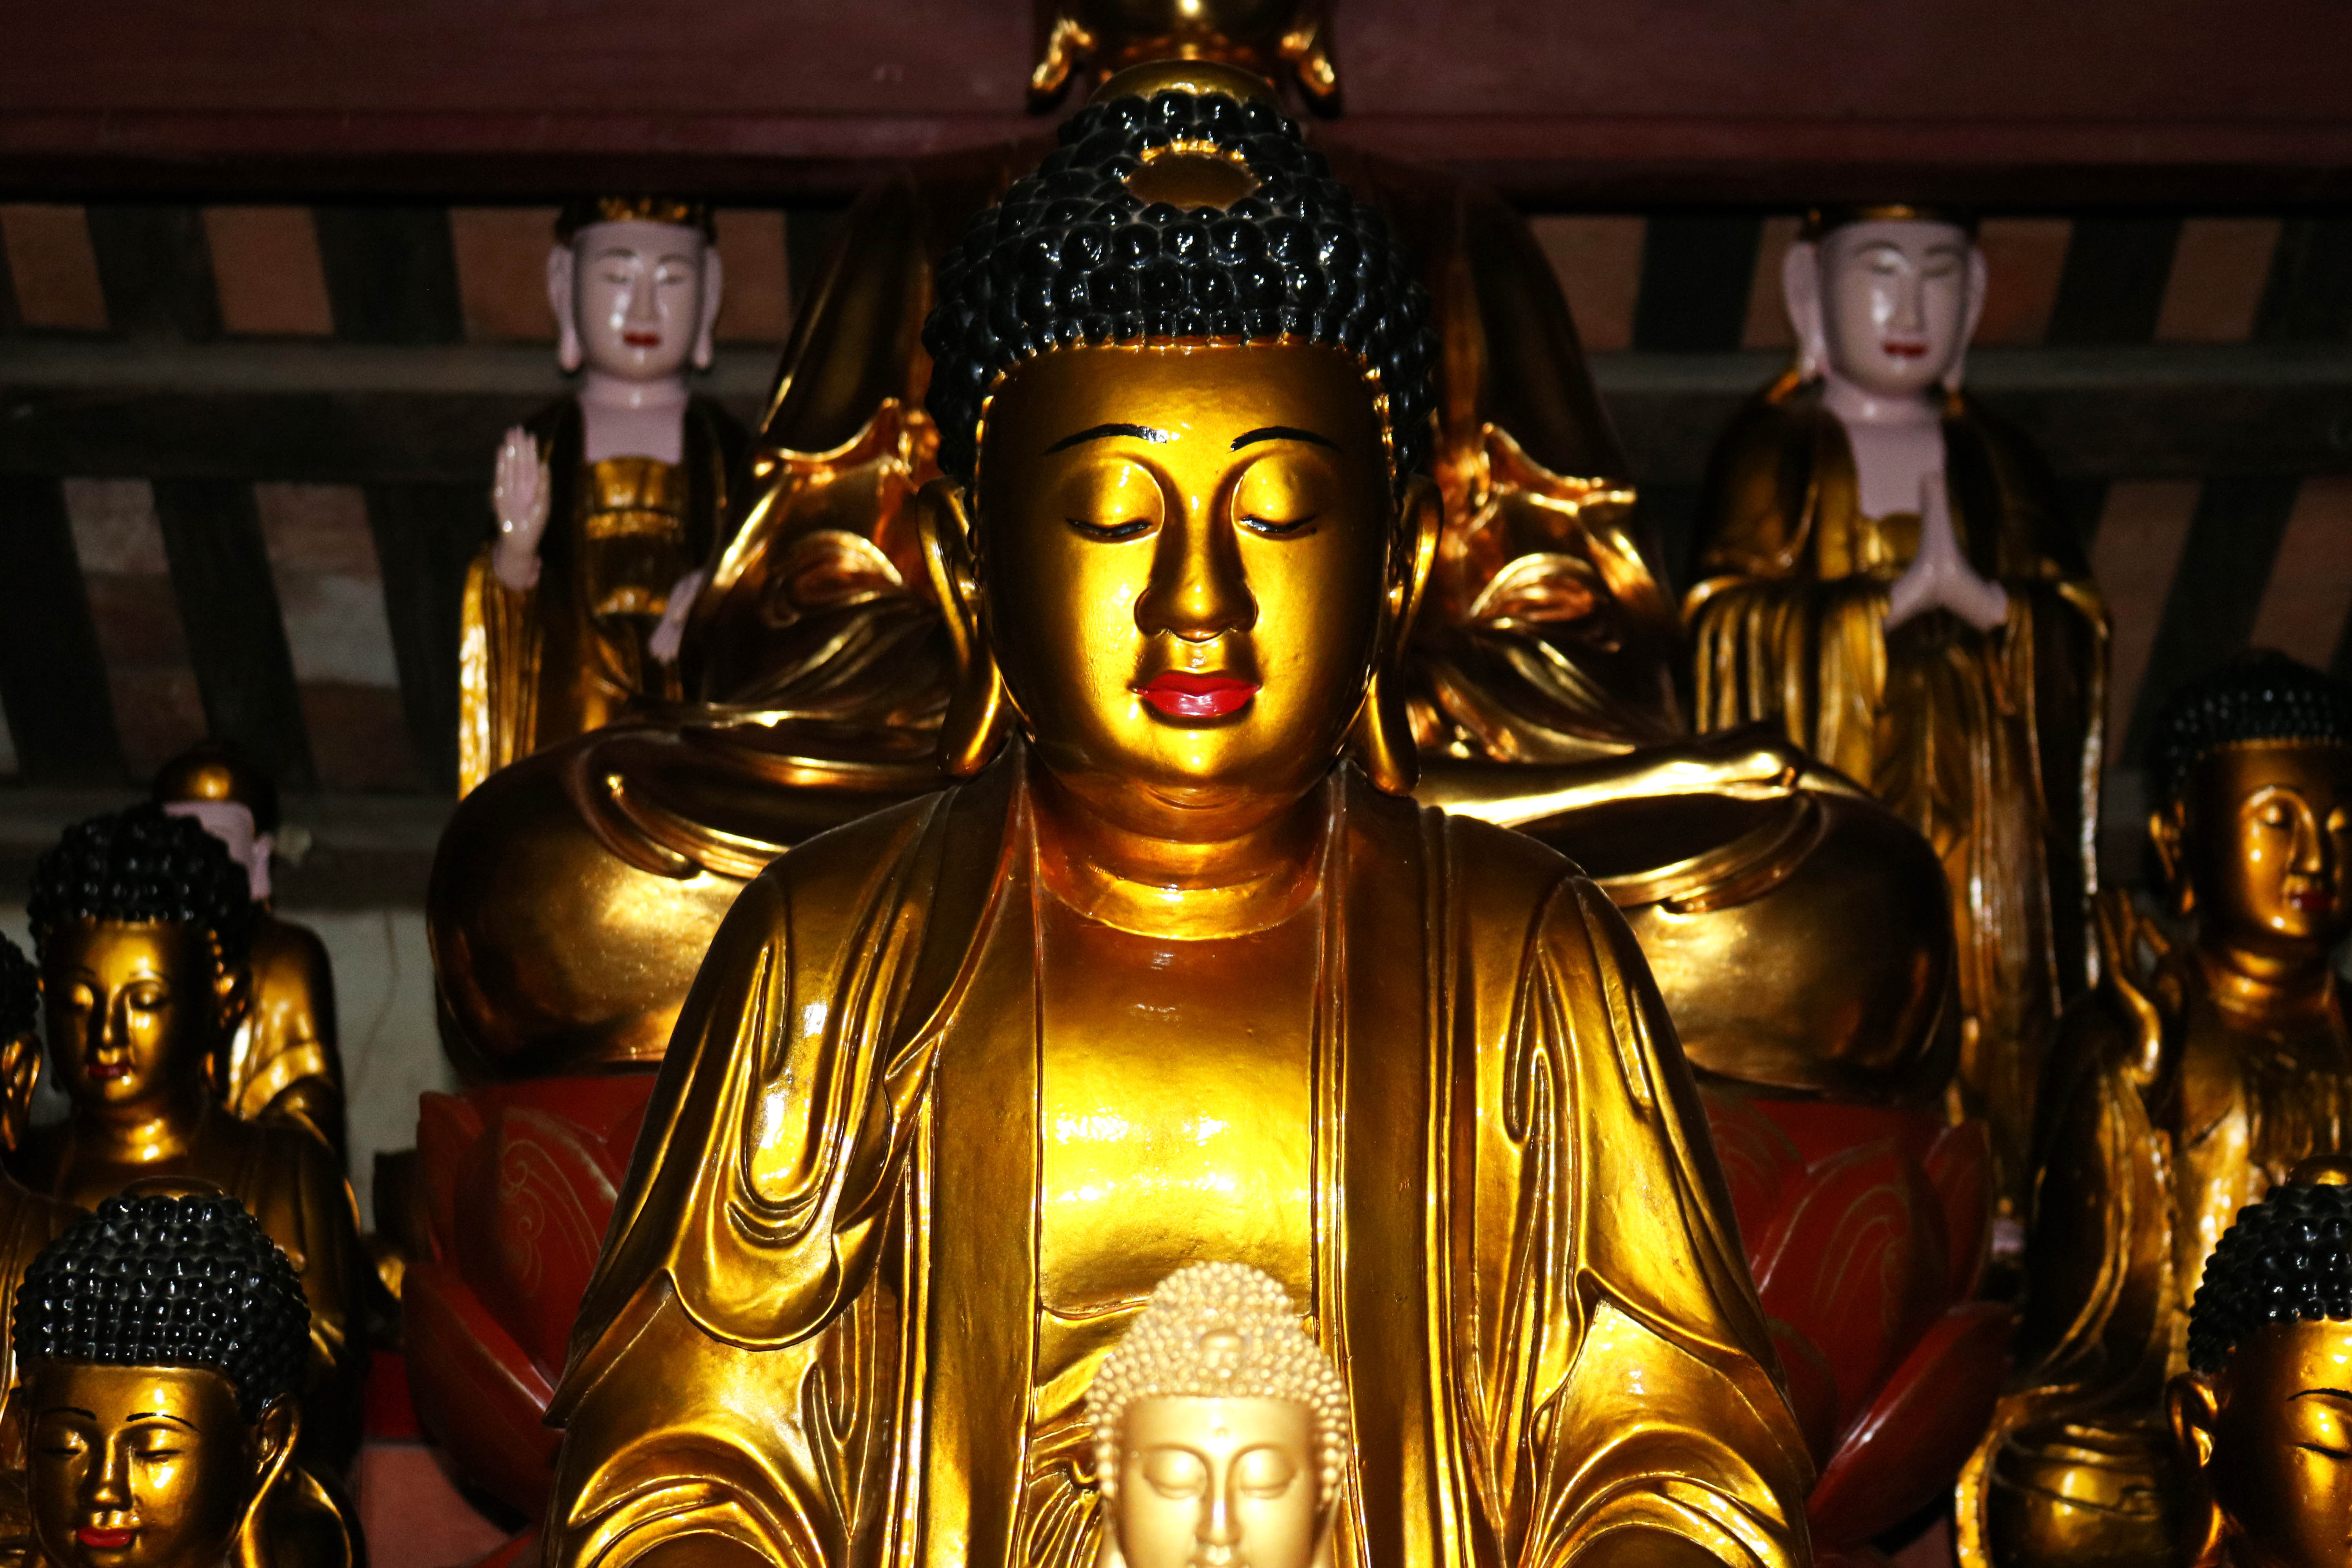 Hai pho tượng đức Phật Thích Ca lớn nhất cao khoảng 1,3m được bài trí chính giữa với khuôn mặt đầy đặn, mắt nhắm, ngồi thiền định trên tòa sen. Ảnh: Huy Thư